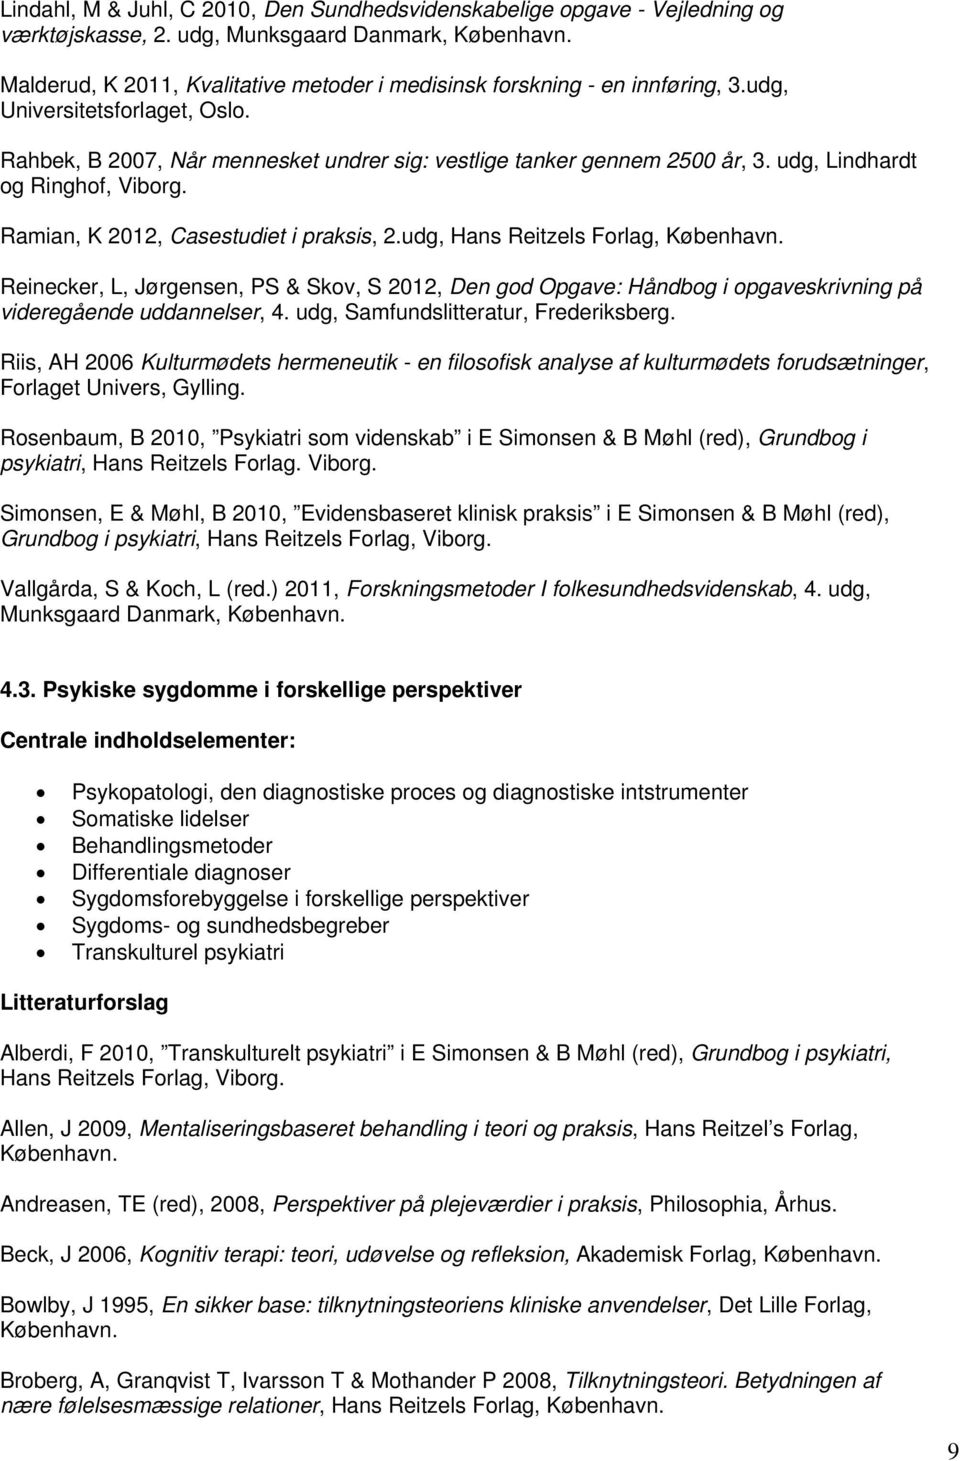 udg, Hans Reitzels Forlag, Reinecker, L, Jørgensen, PS & Skov, S 2012, Den god Opgave: Håndbog i opgaveskrivning på videregående uddannelser, 4. udg, Samfundslitteratur, Frederiksberg.